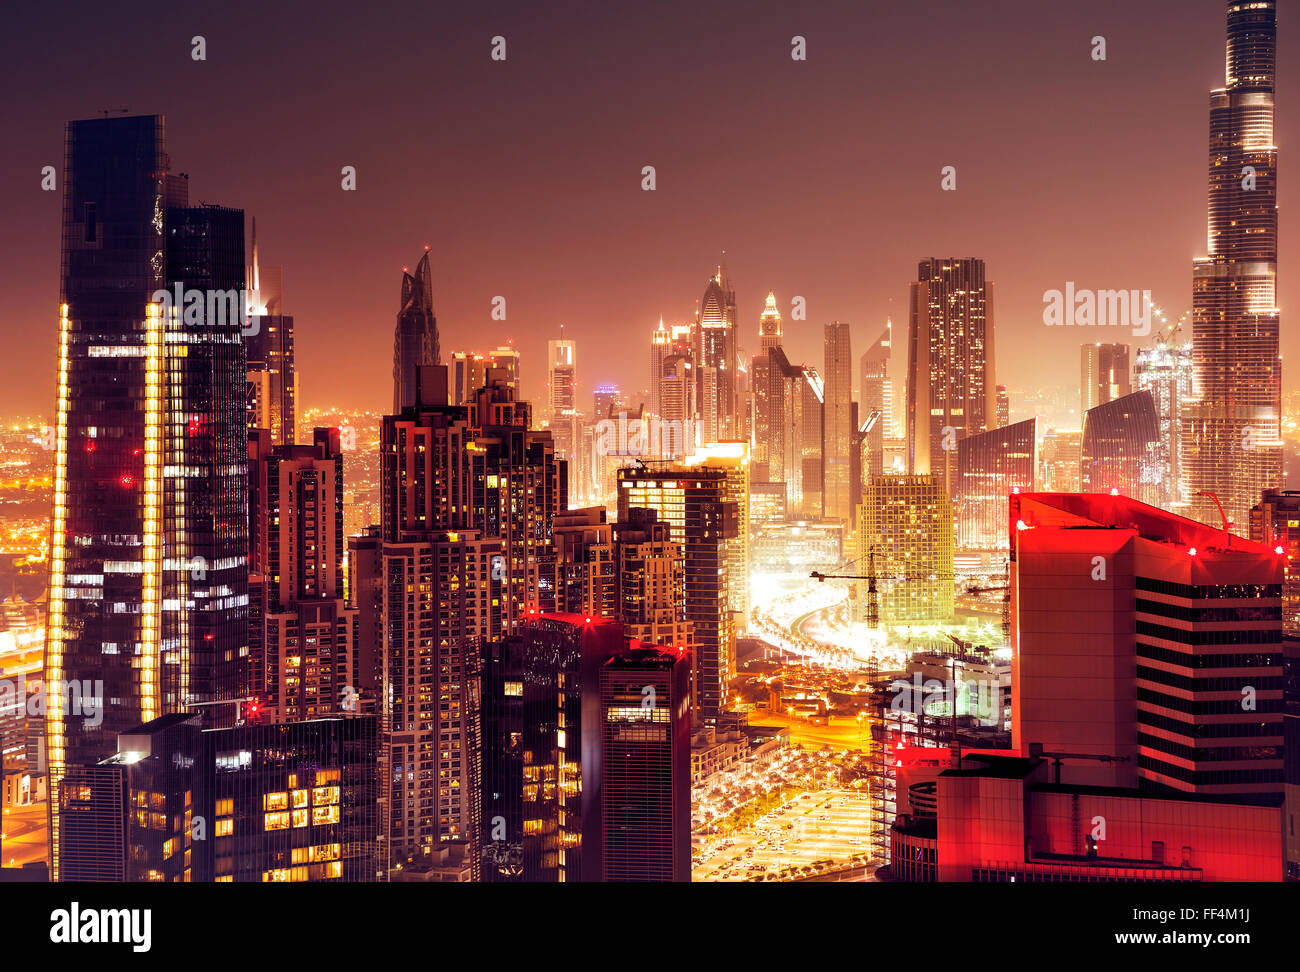 Dubai città di notte, bellissimo paesaggio notturno, moderno alti grattacieli incandescente con molte luci, edifici di lusso negli EMIRATI ARABI UNITI Foto Stock